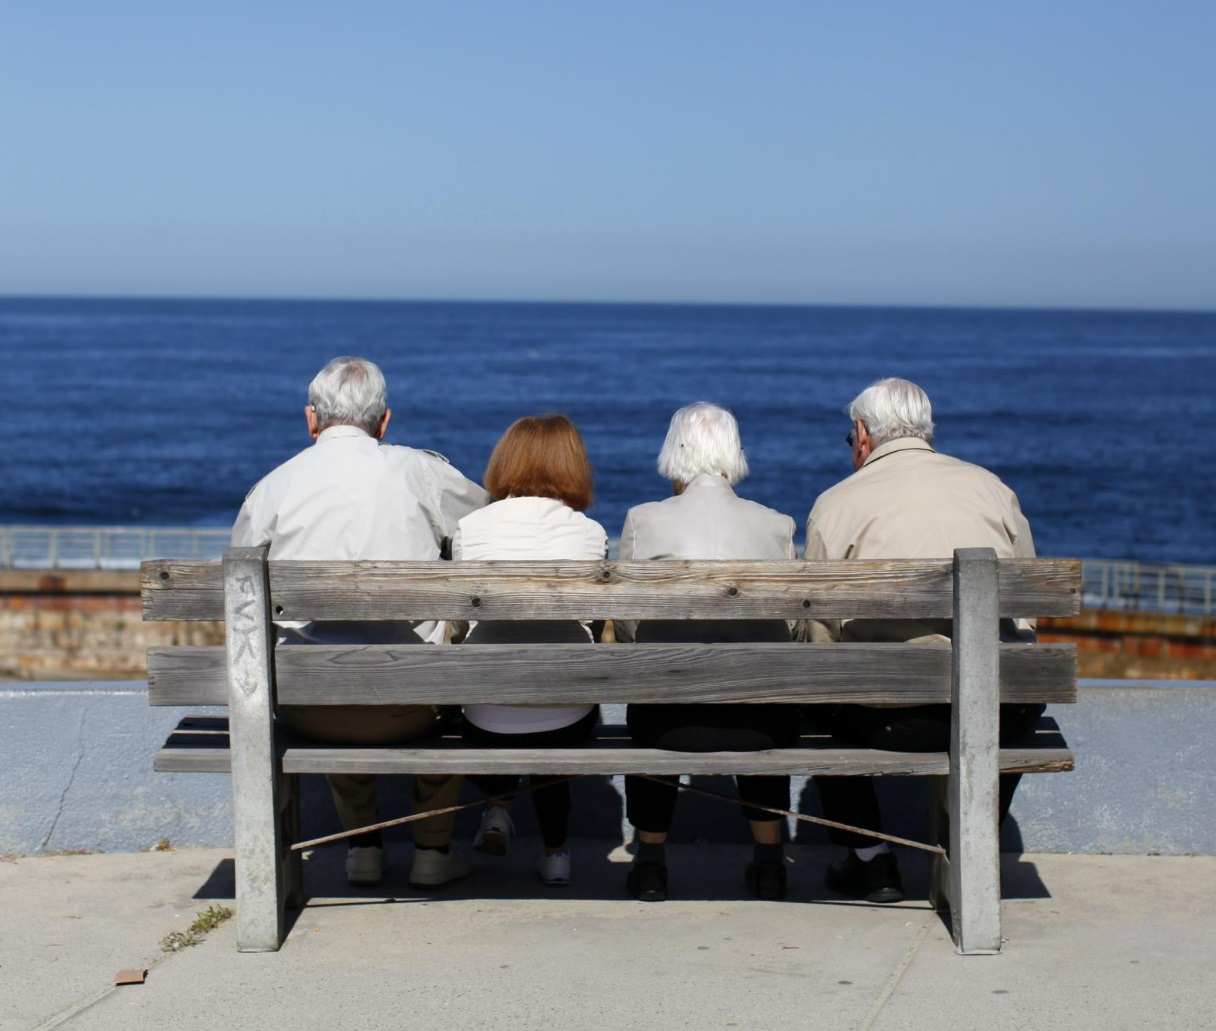 Repenser l'assurance pour une population vieillissante